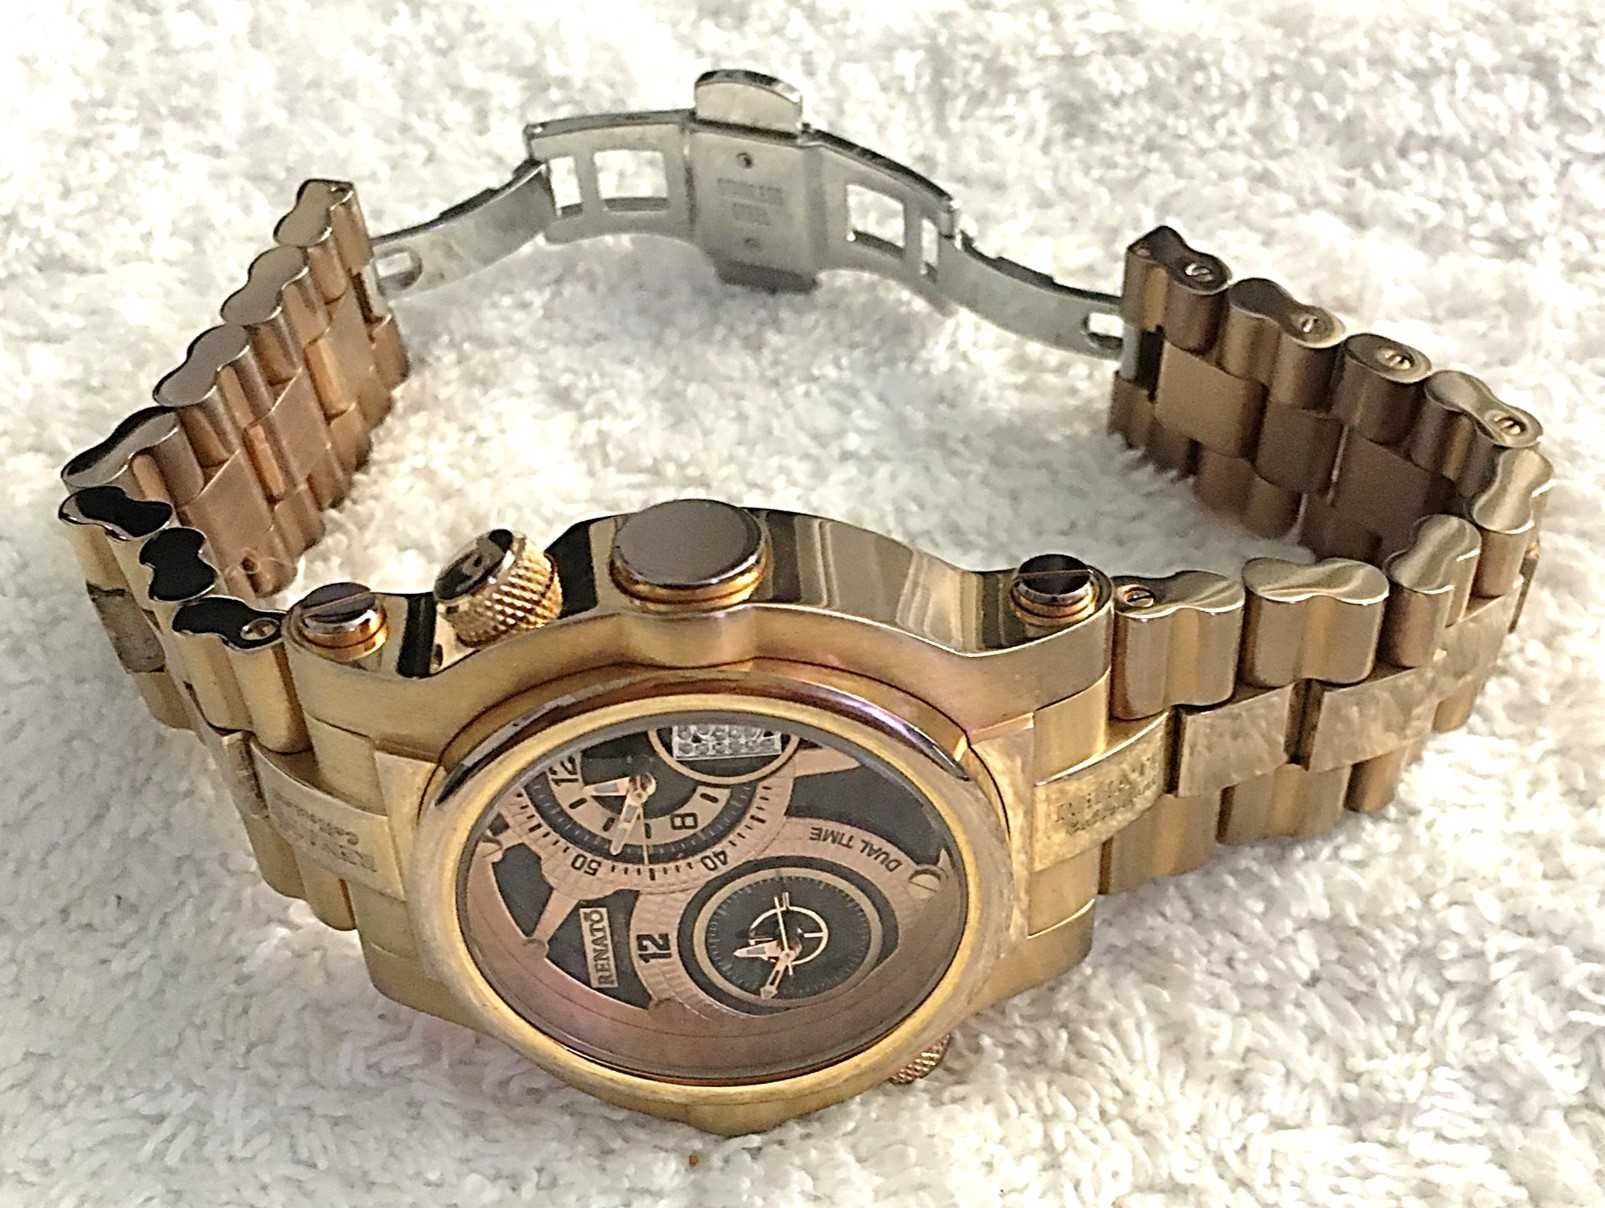 Relógio Renato duplo mostrador plaque ouro rosa